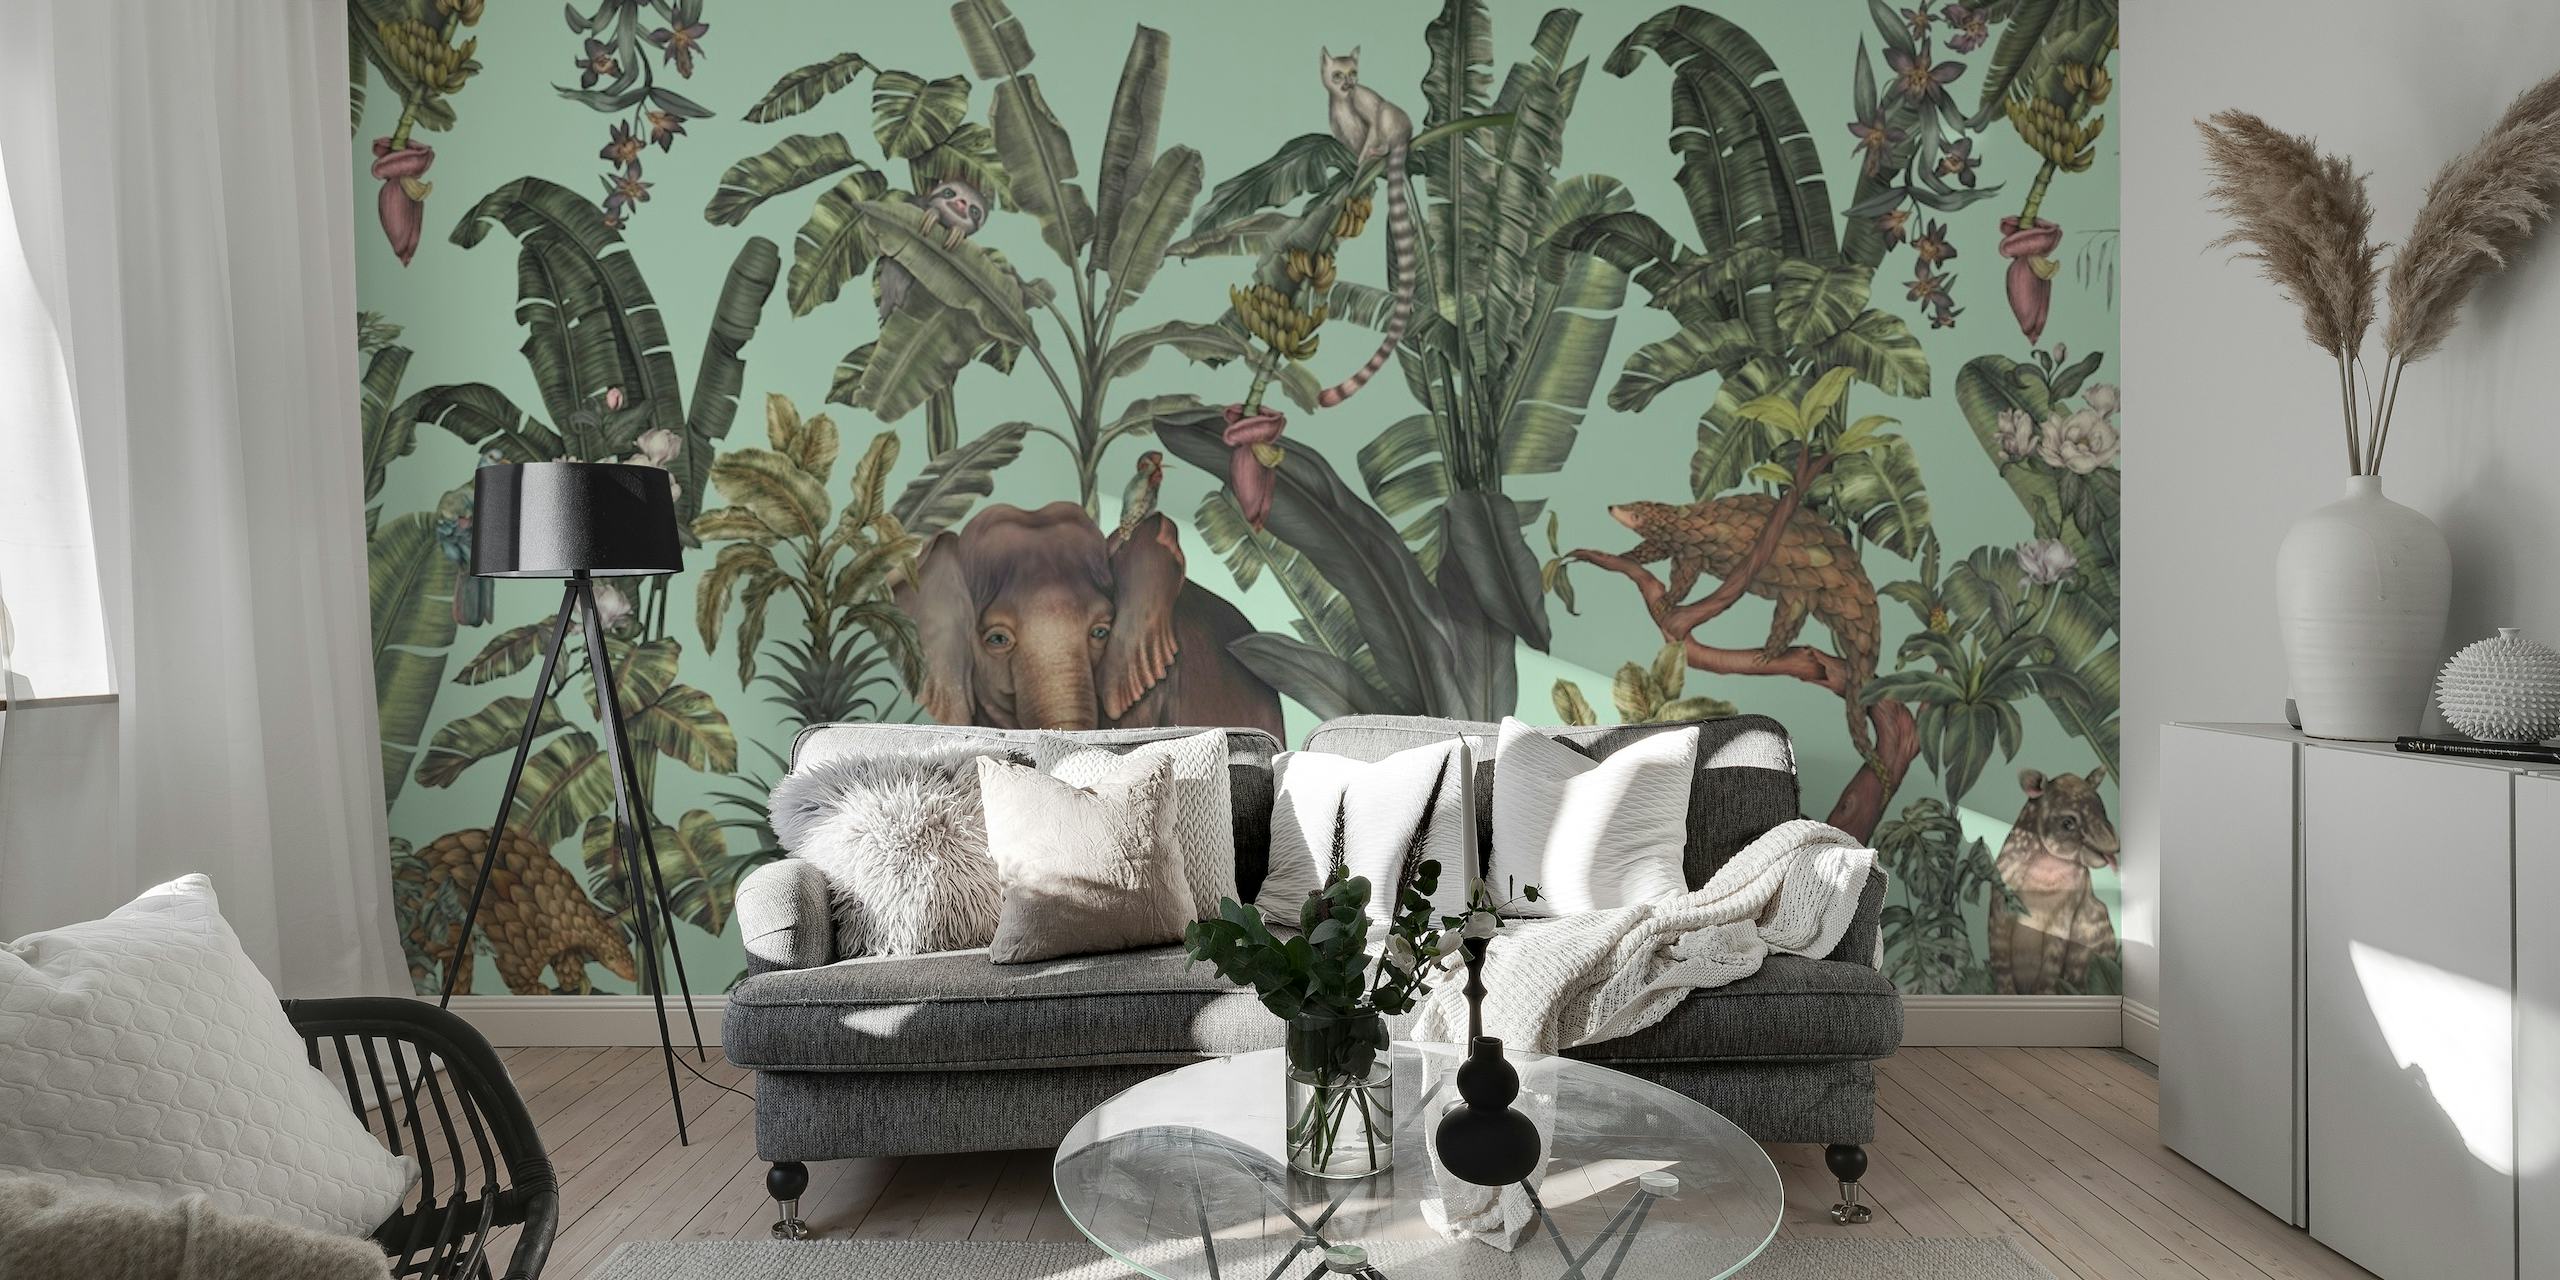 Hellgrünes Wandgemälde im Dschungel-Stil mit tropischer Flora und versteckter Tierwelt